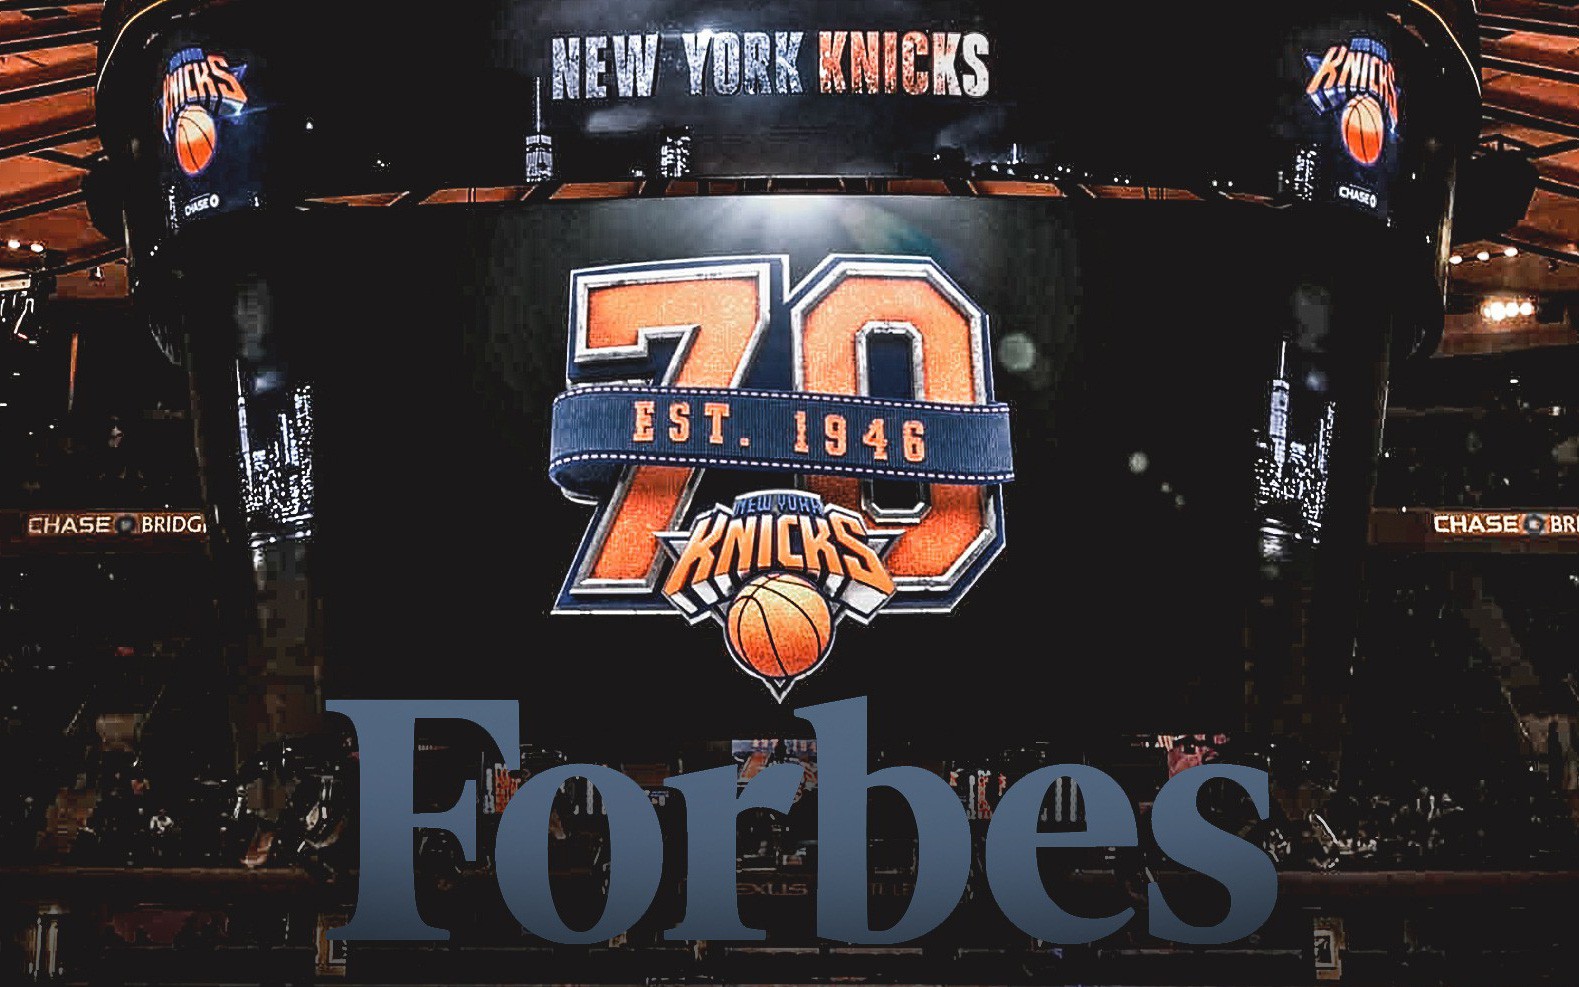 Vượt mặt Laker và Warriors, New York Knicks là đội bóng có giá trị nhất tại NBA